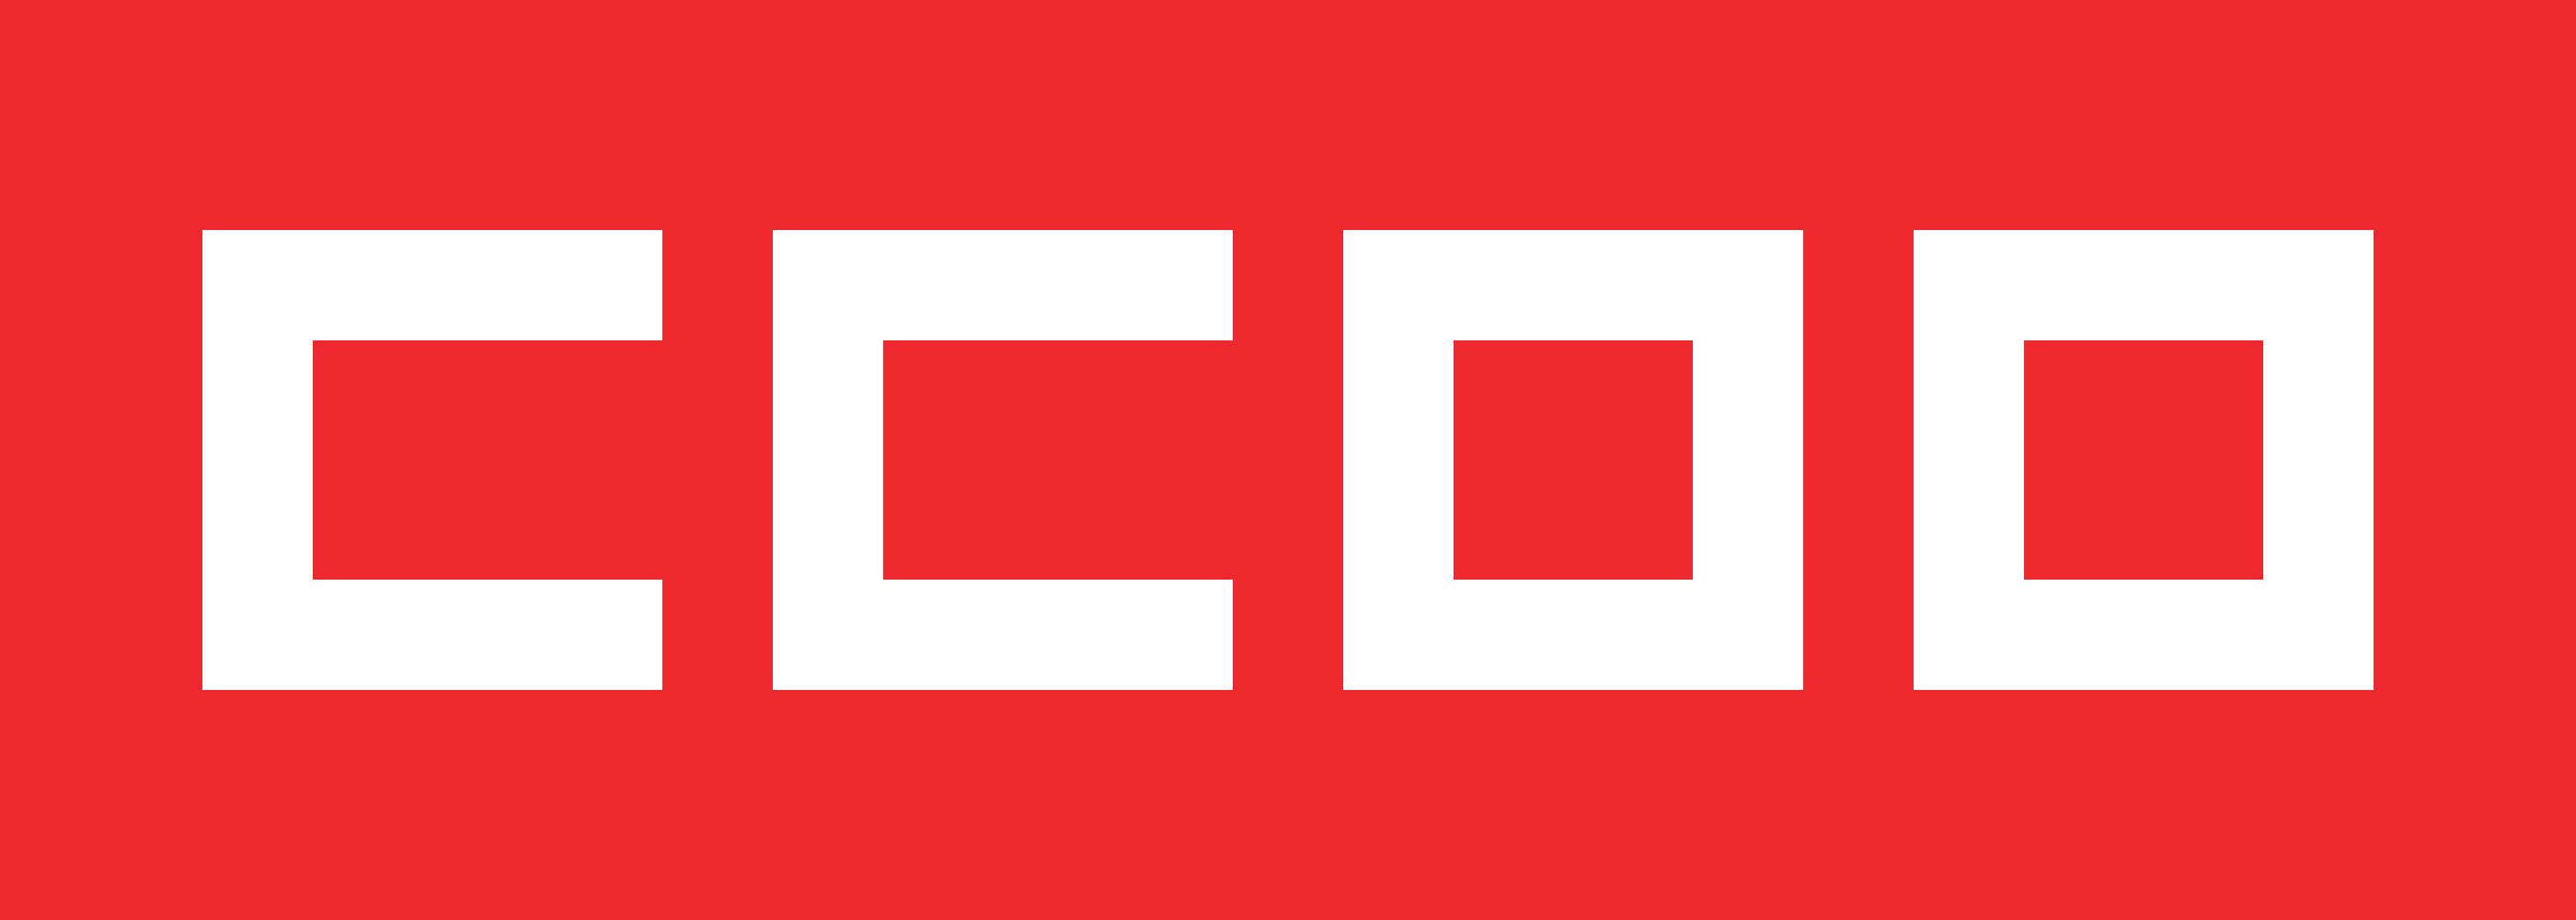 ccoo logo Comisiones Obreras